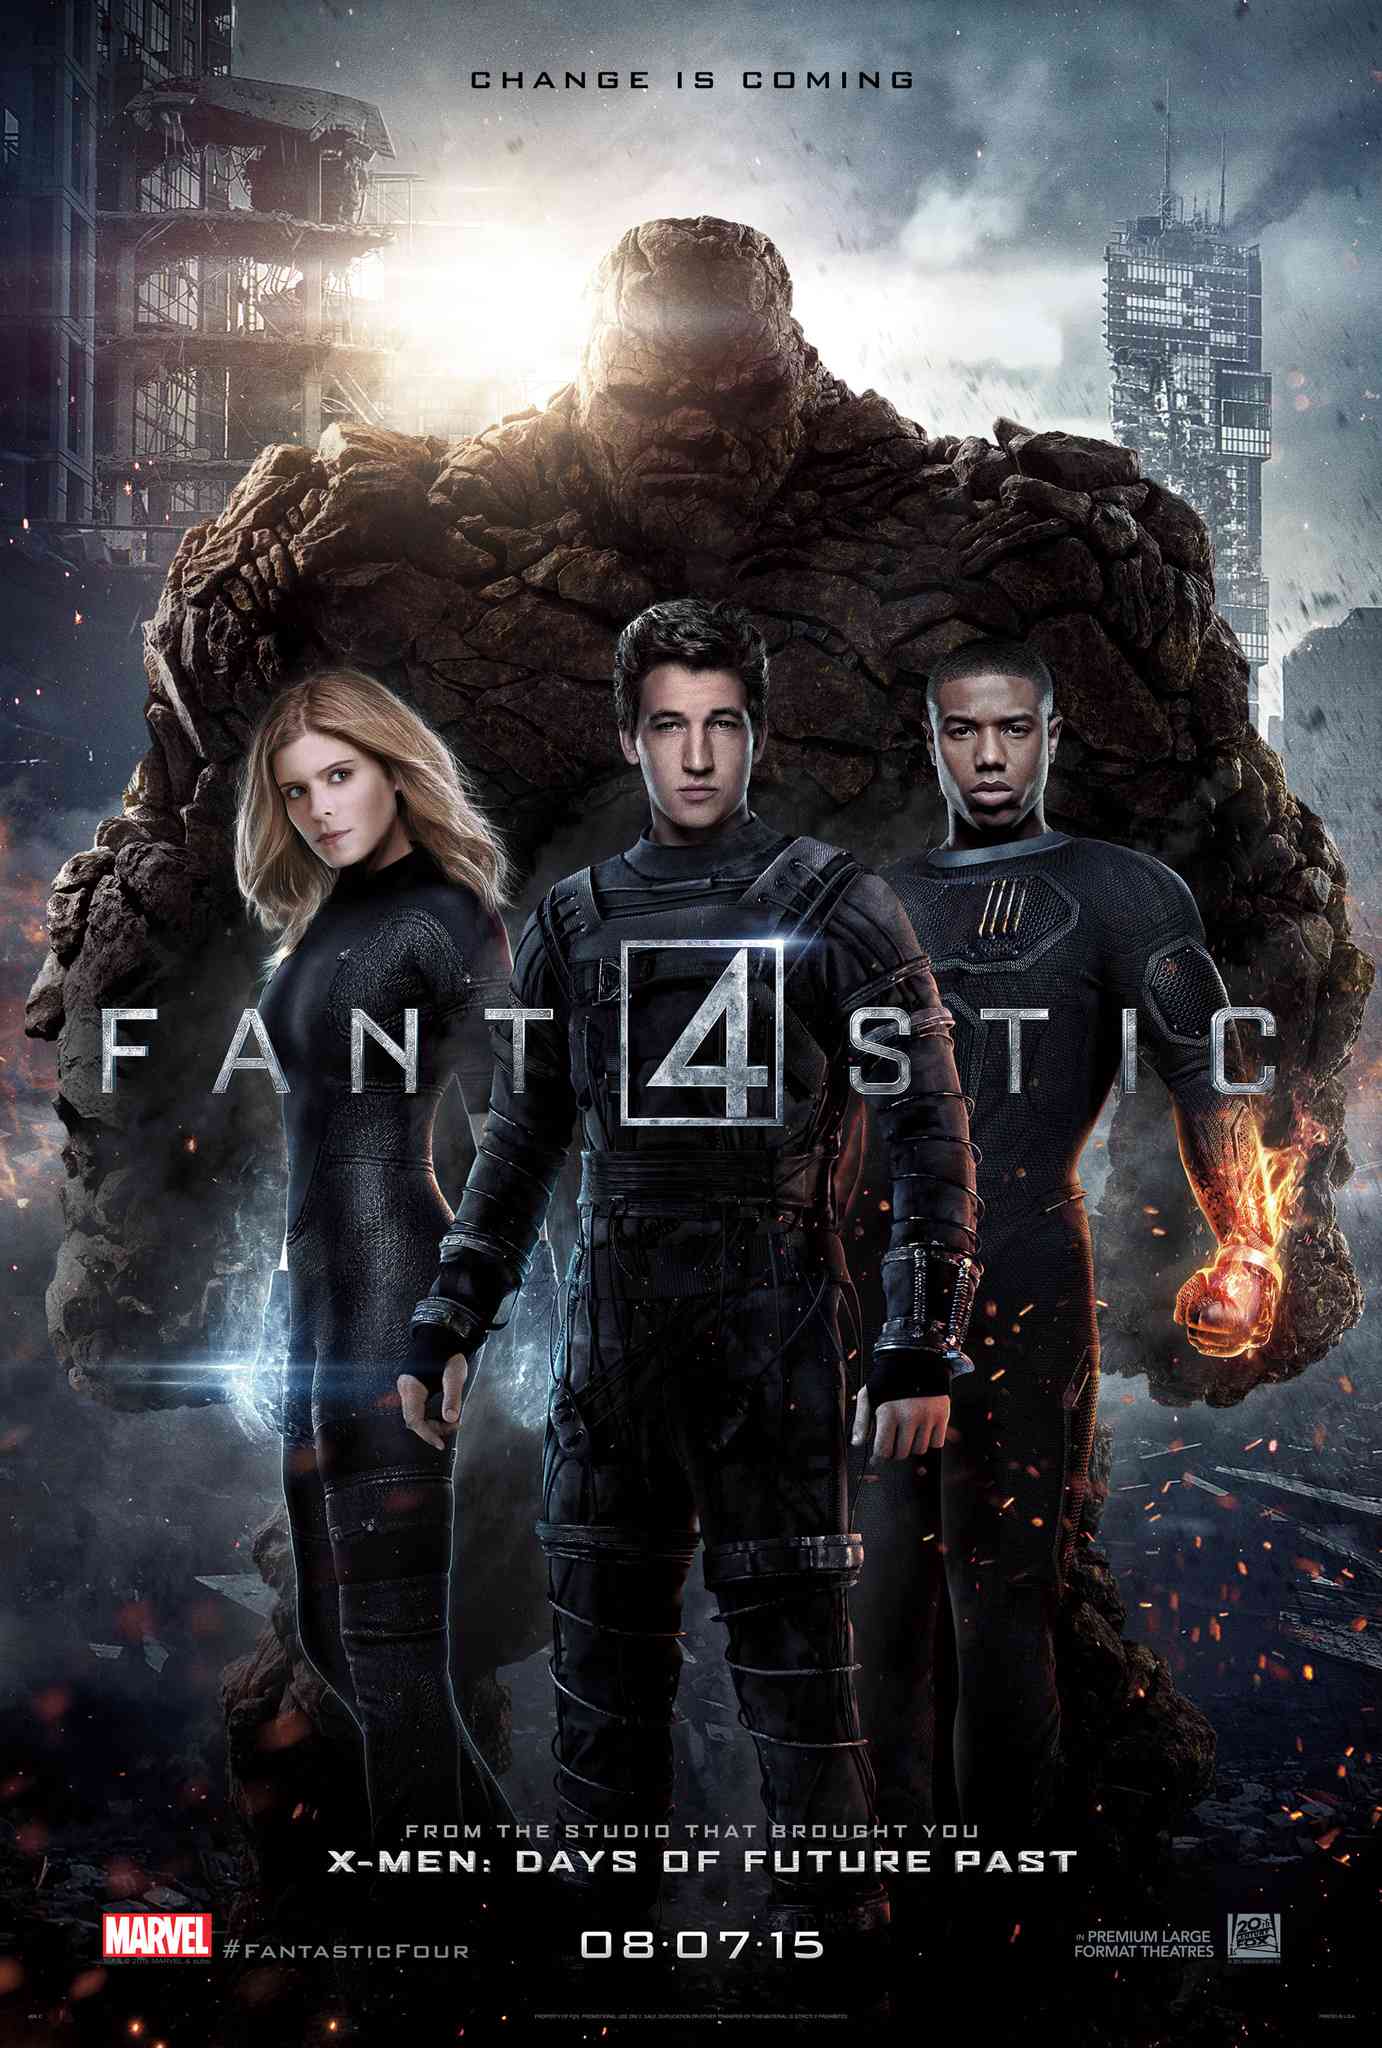 FULL MOVIE: Fantastic Four (2015)